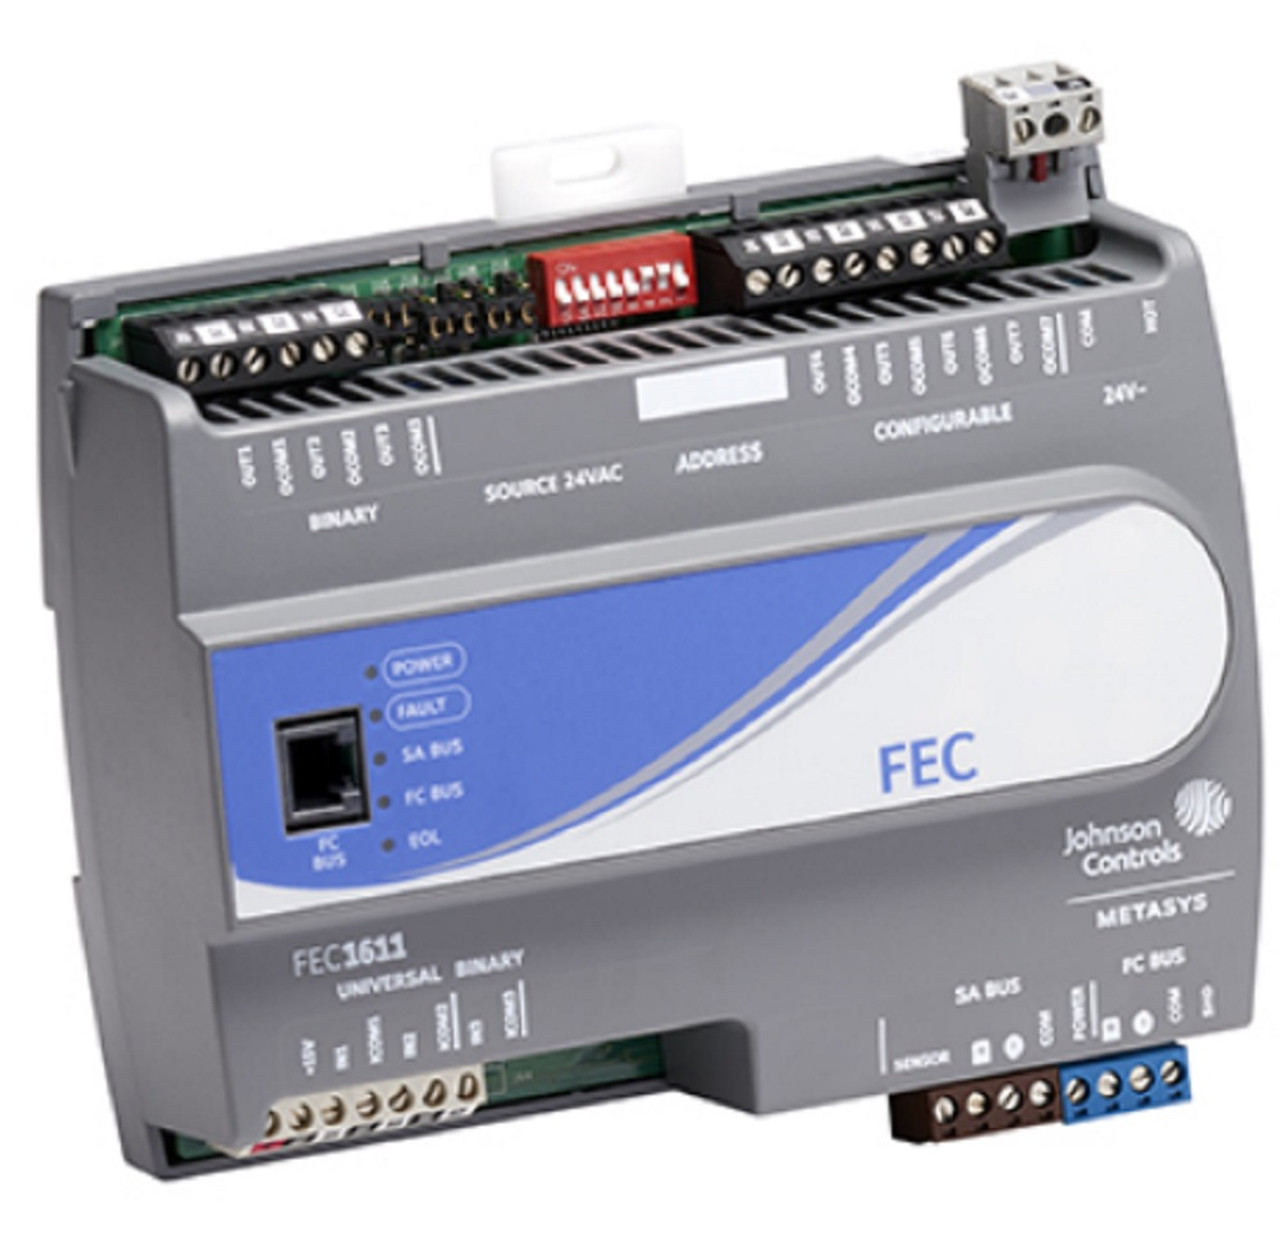 Johnson Controls MS-FEC1611-0 FEC16 FEC Field Equipment Controller, 10-Point [New]